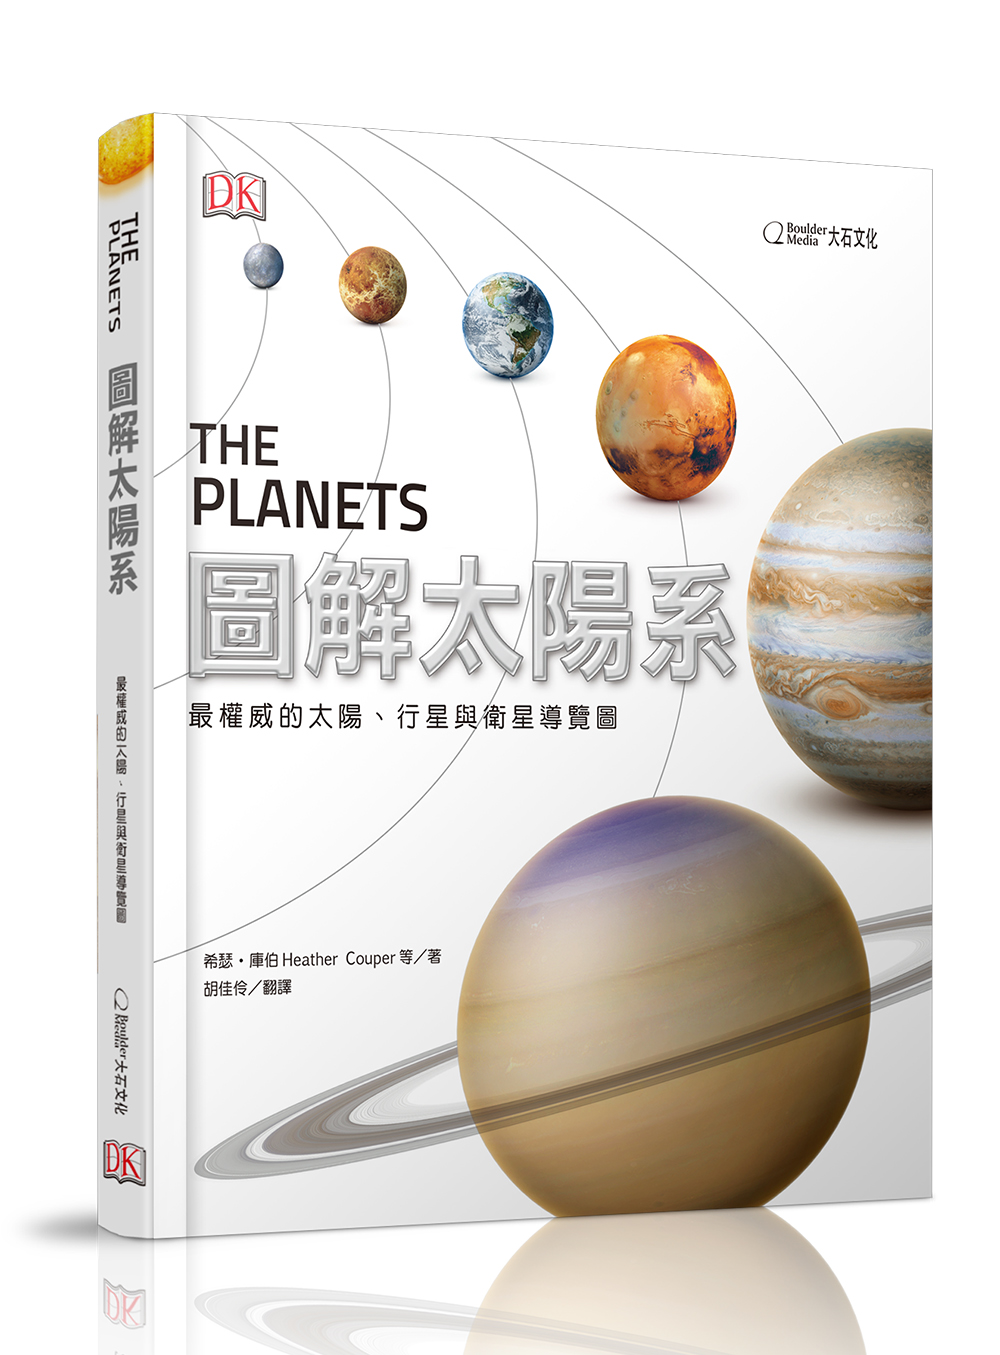 國家地理雜誌 中文版 紙本 訂閱 1年12期 合購 《圖解太陽系》